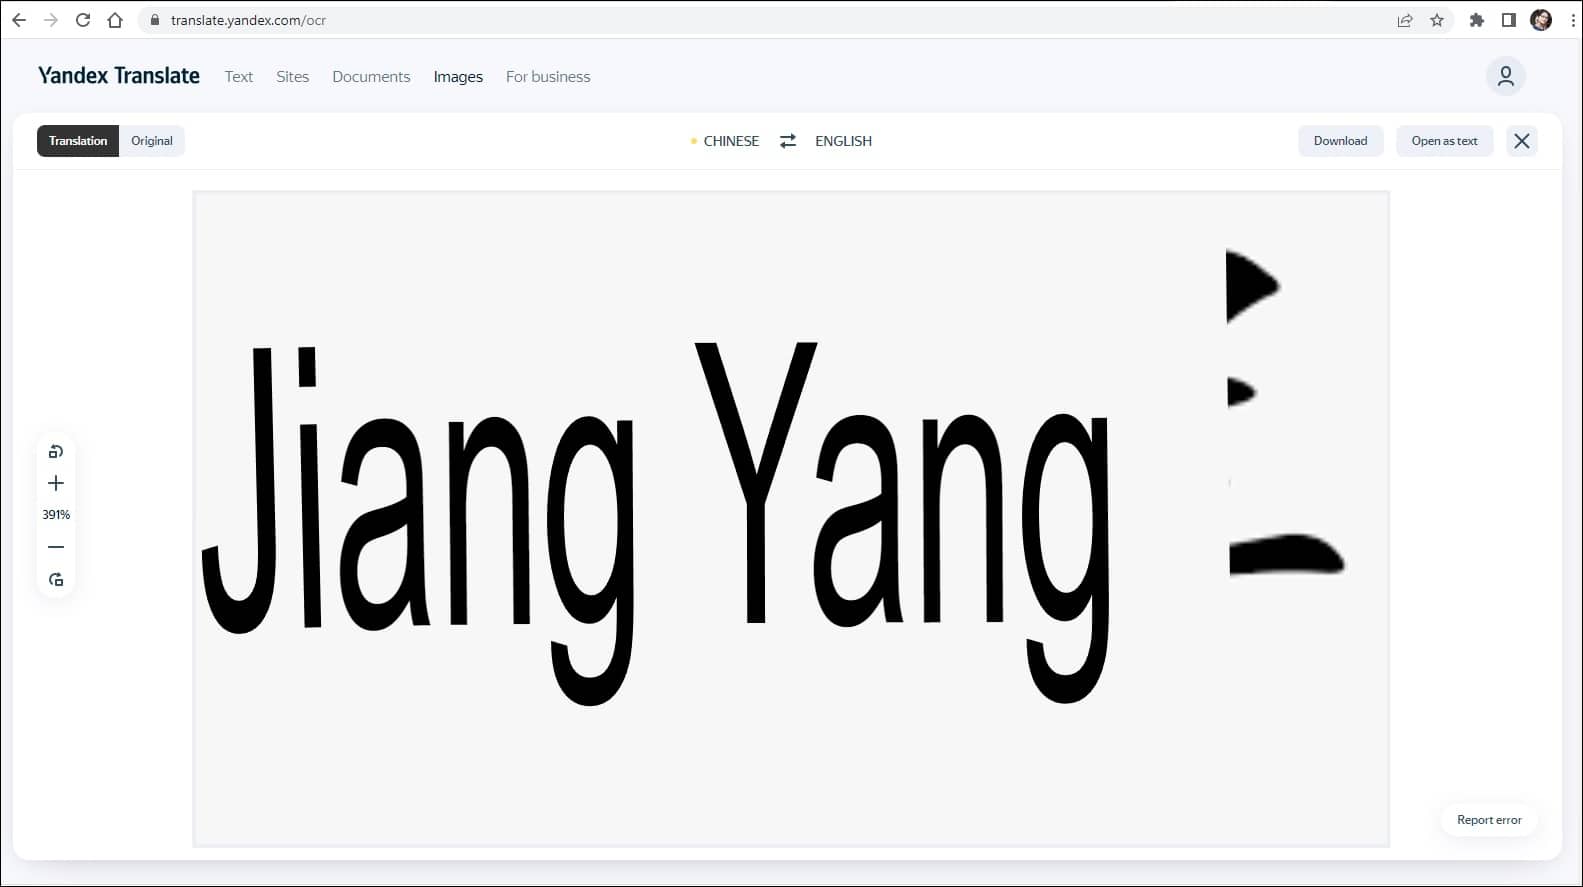 yandex-translated-chinese-image-to-english